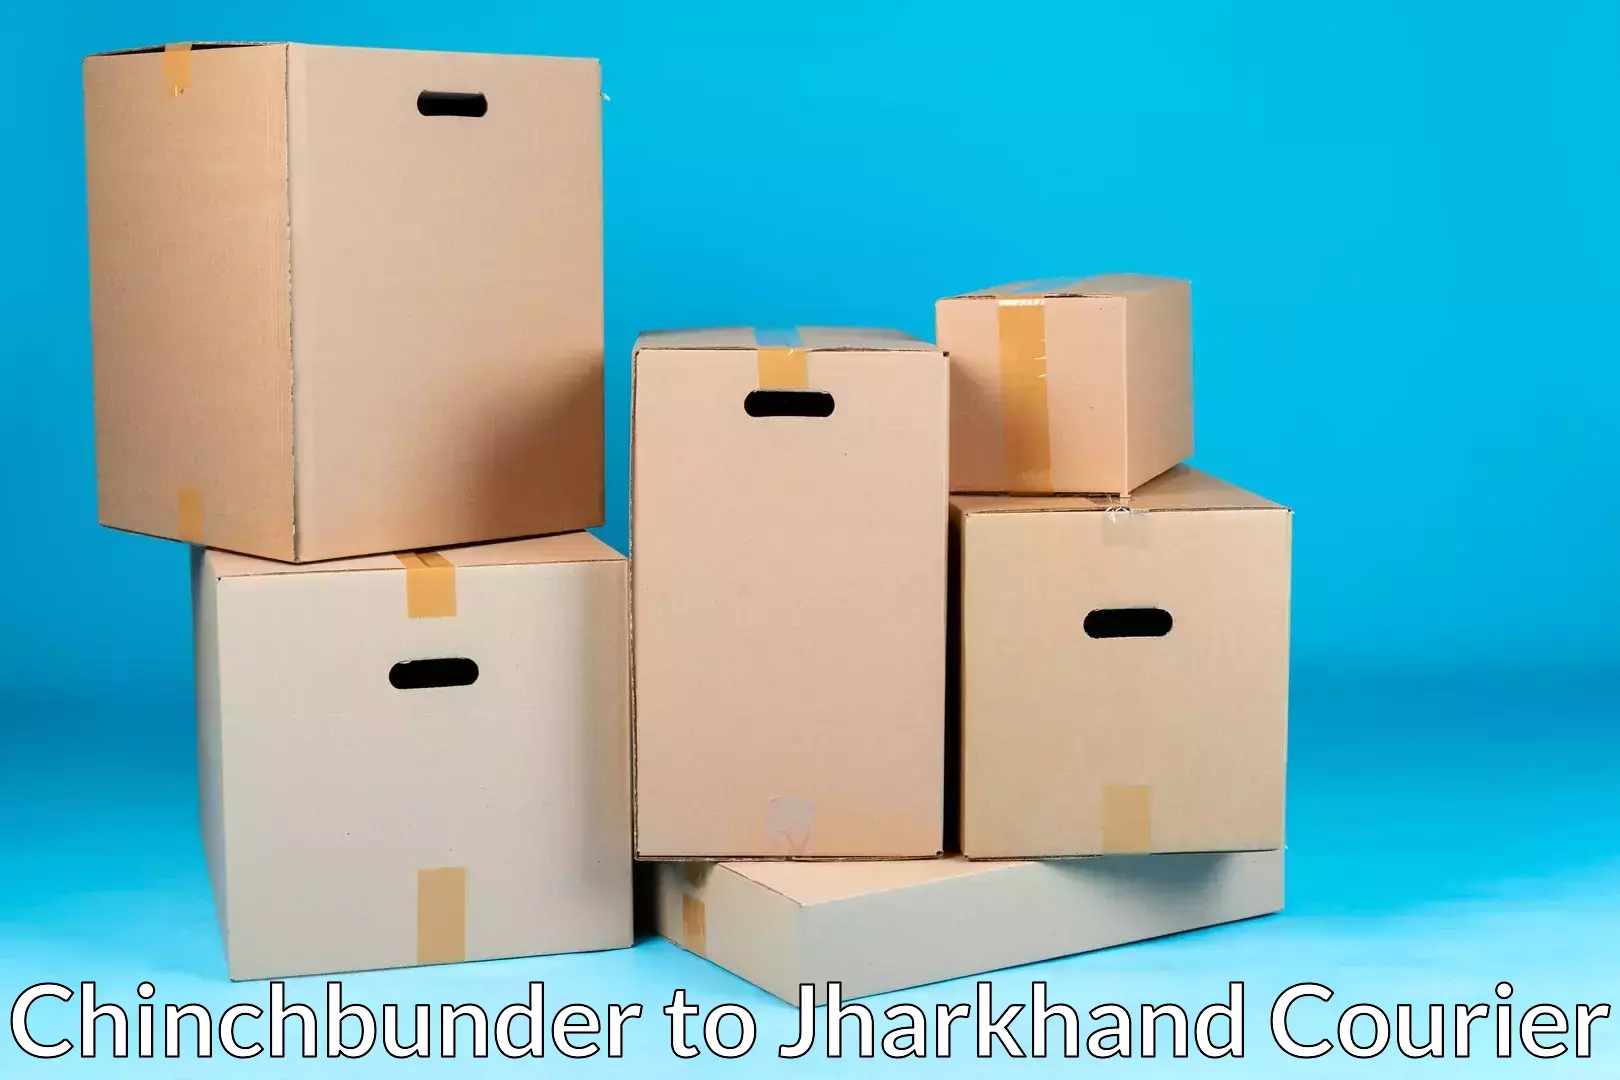 Furniture transport company Chinchbunder to Chandankiyari